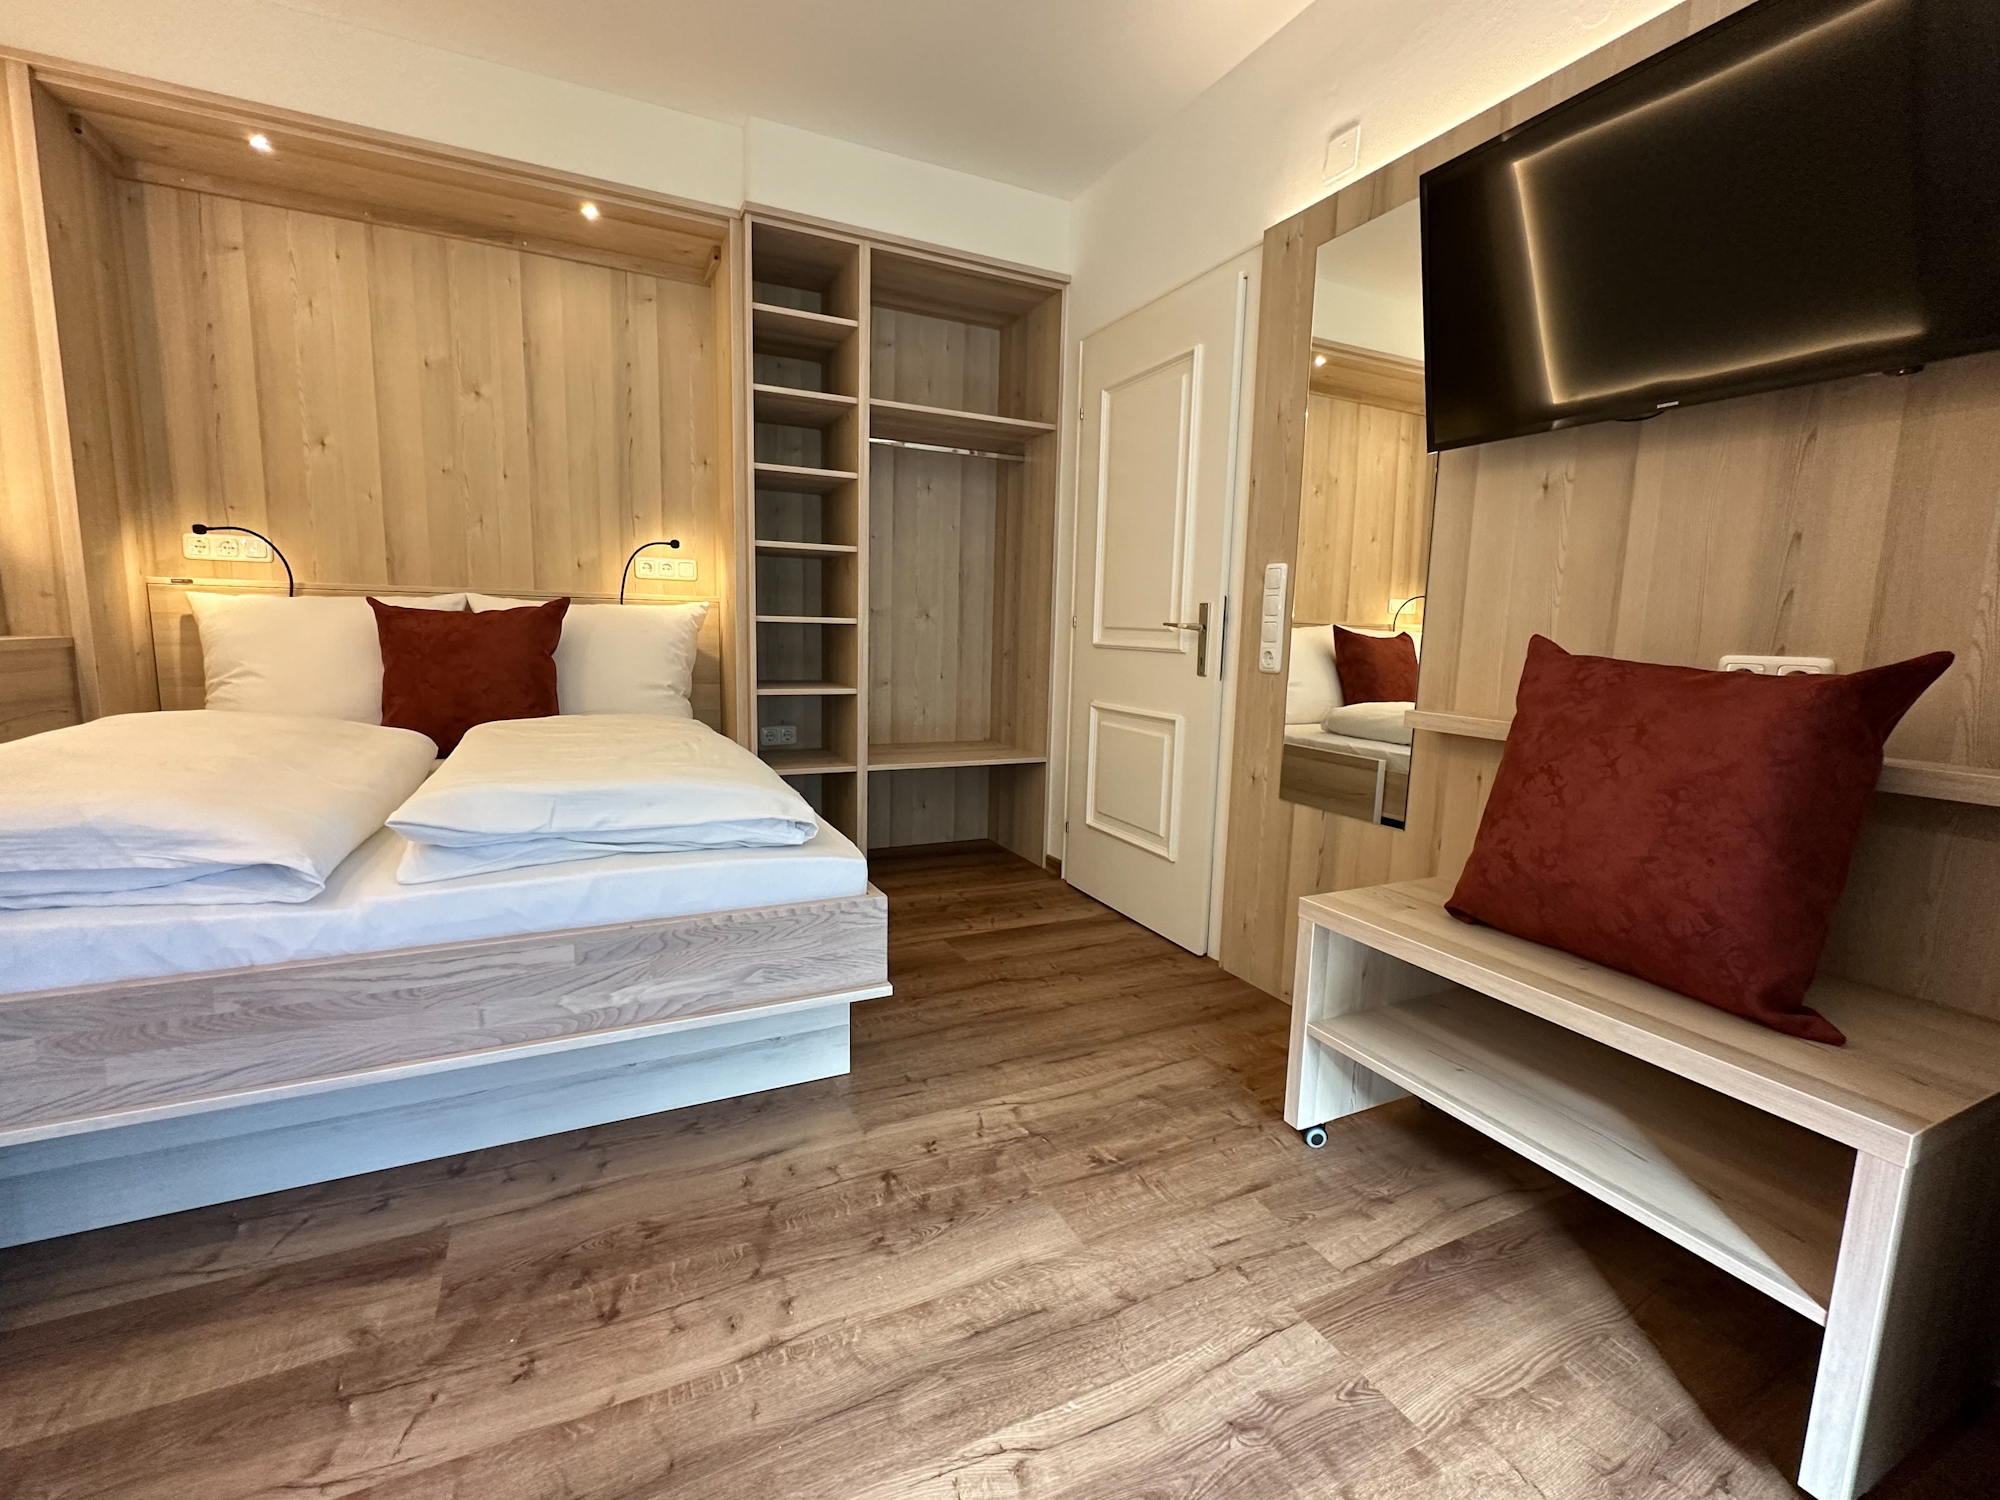 Appartementhaus Zillertal: Ferienwohnung für 3 Personen - Wohnbereich mit Doppelbett (Beispiel)